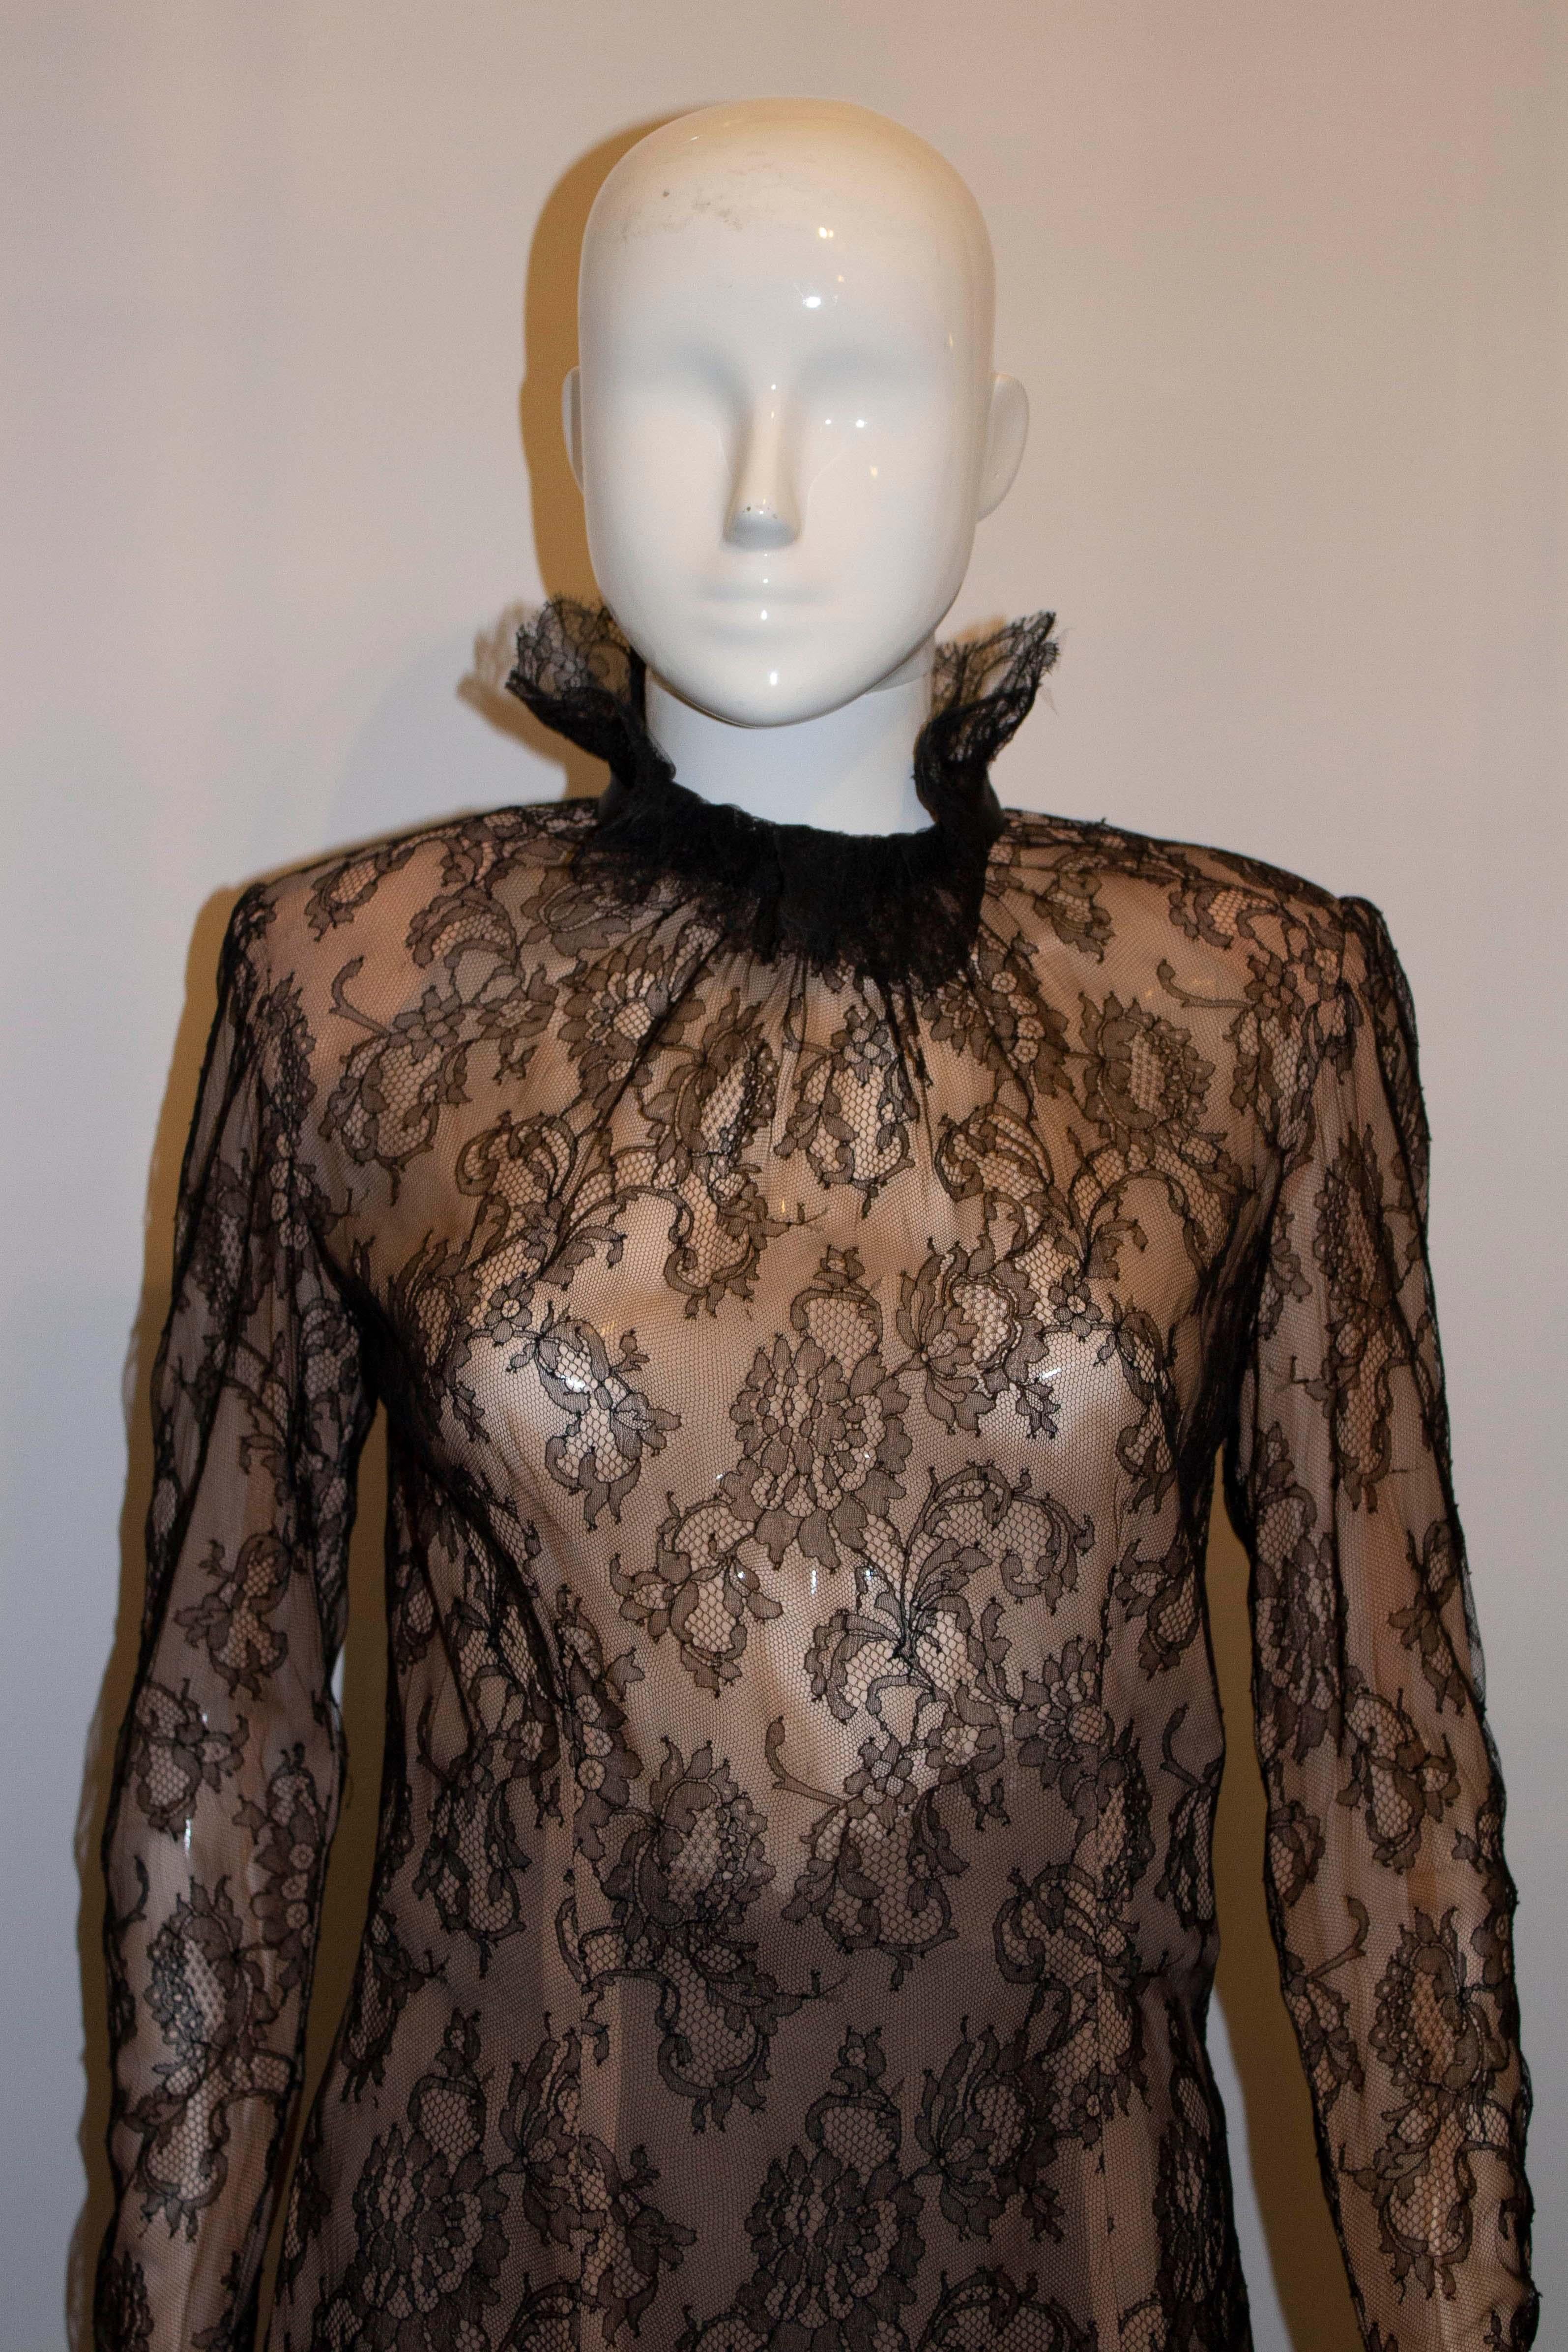 Eine hübsche und schicke Spitzenbluse von Nolan Miller Couture. Das Spitzenoberteil hat ein rot/nudefarbenes Futter mit Rüschen und Bändern am Hals. Sie hat einen Reißverschluss auf der Rückseite.
Maße: Büste 36 '', Länge 27''